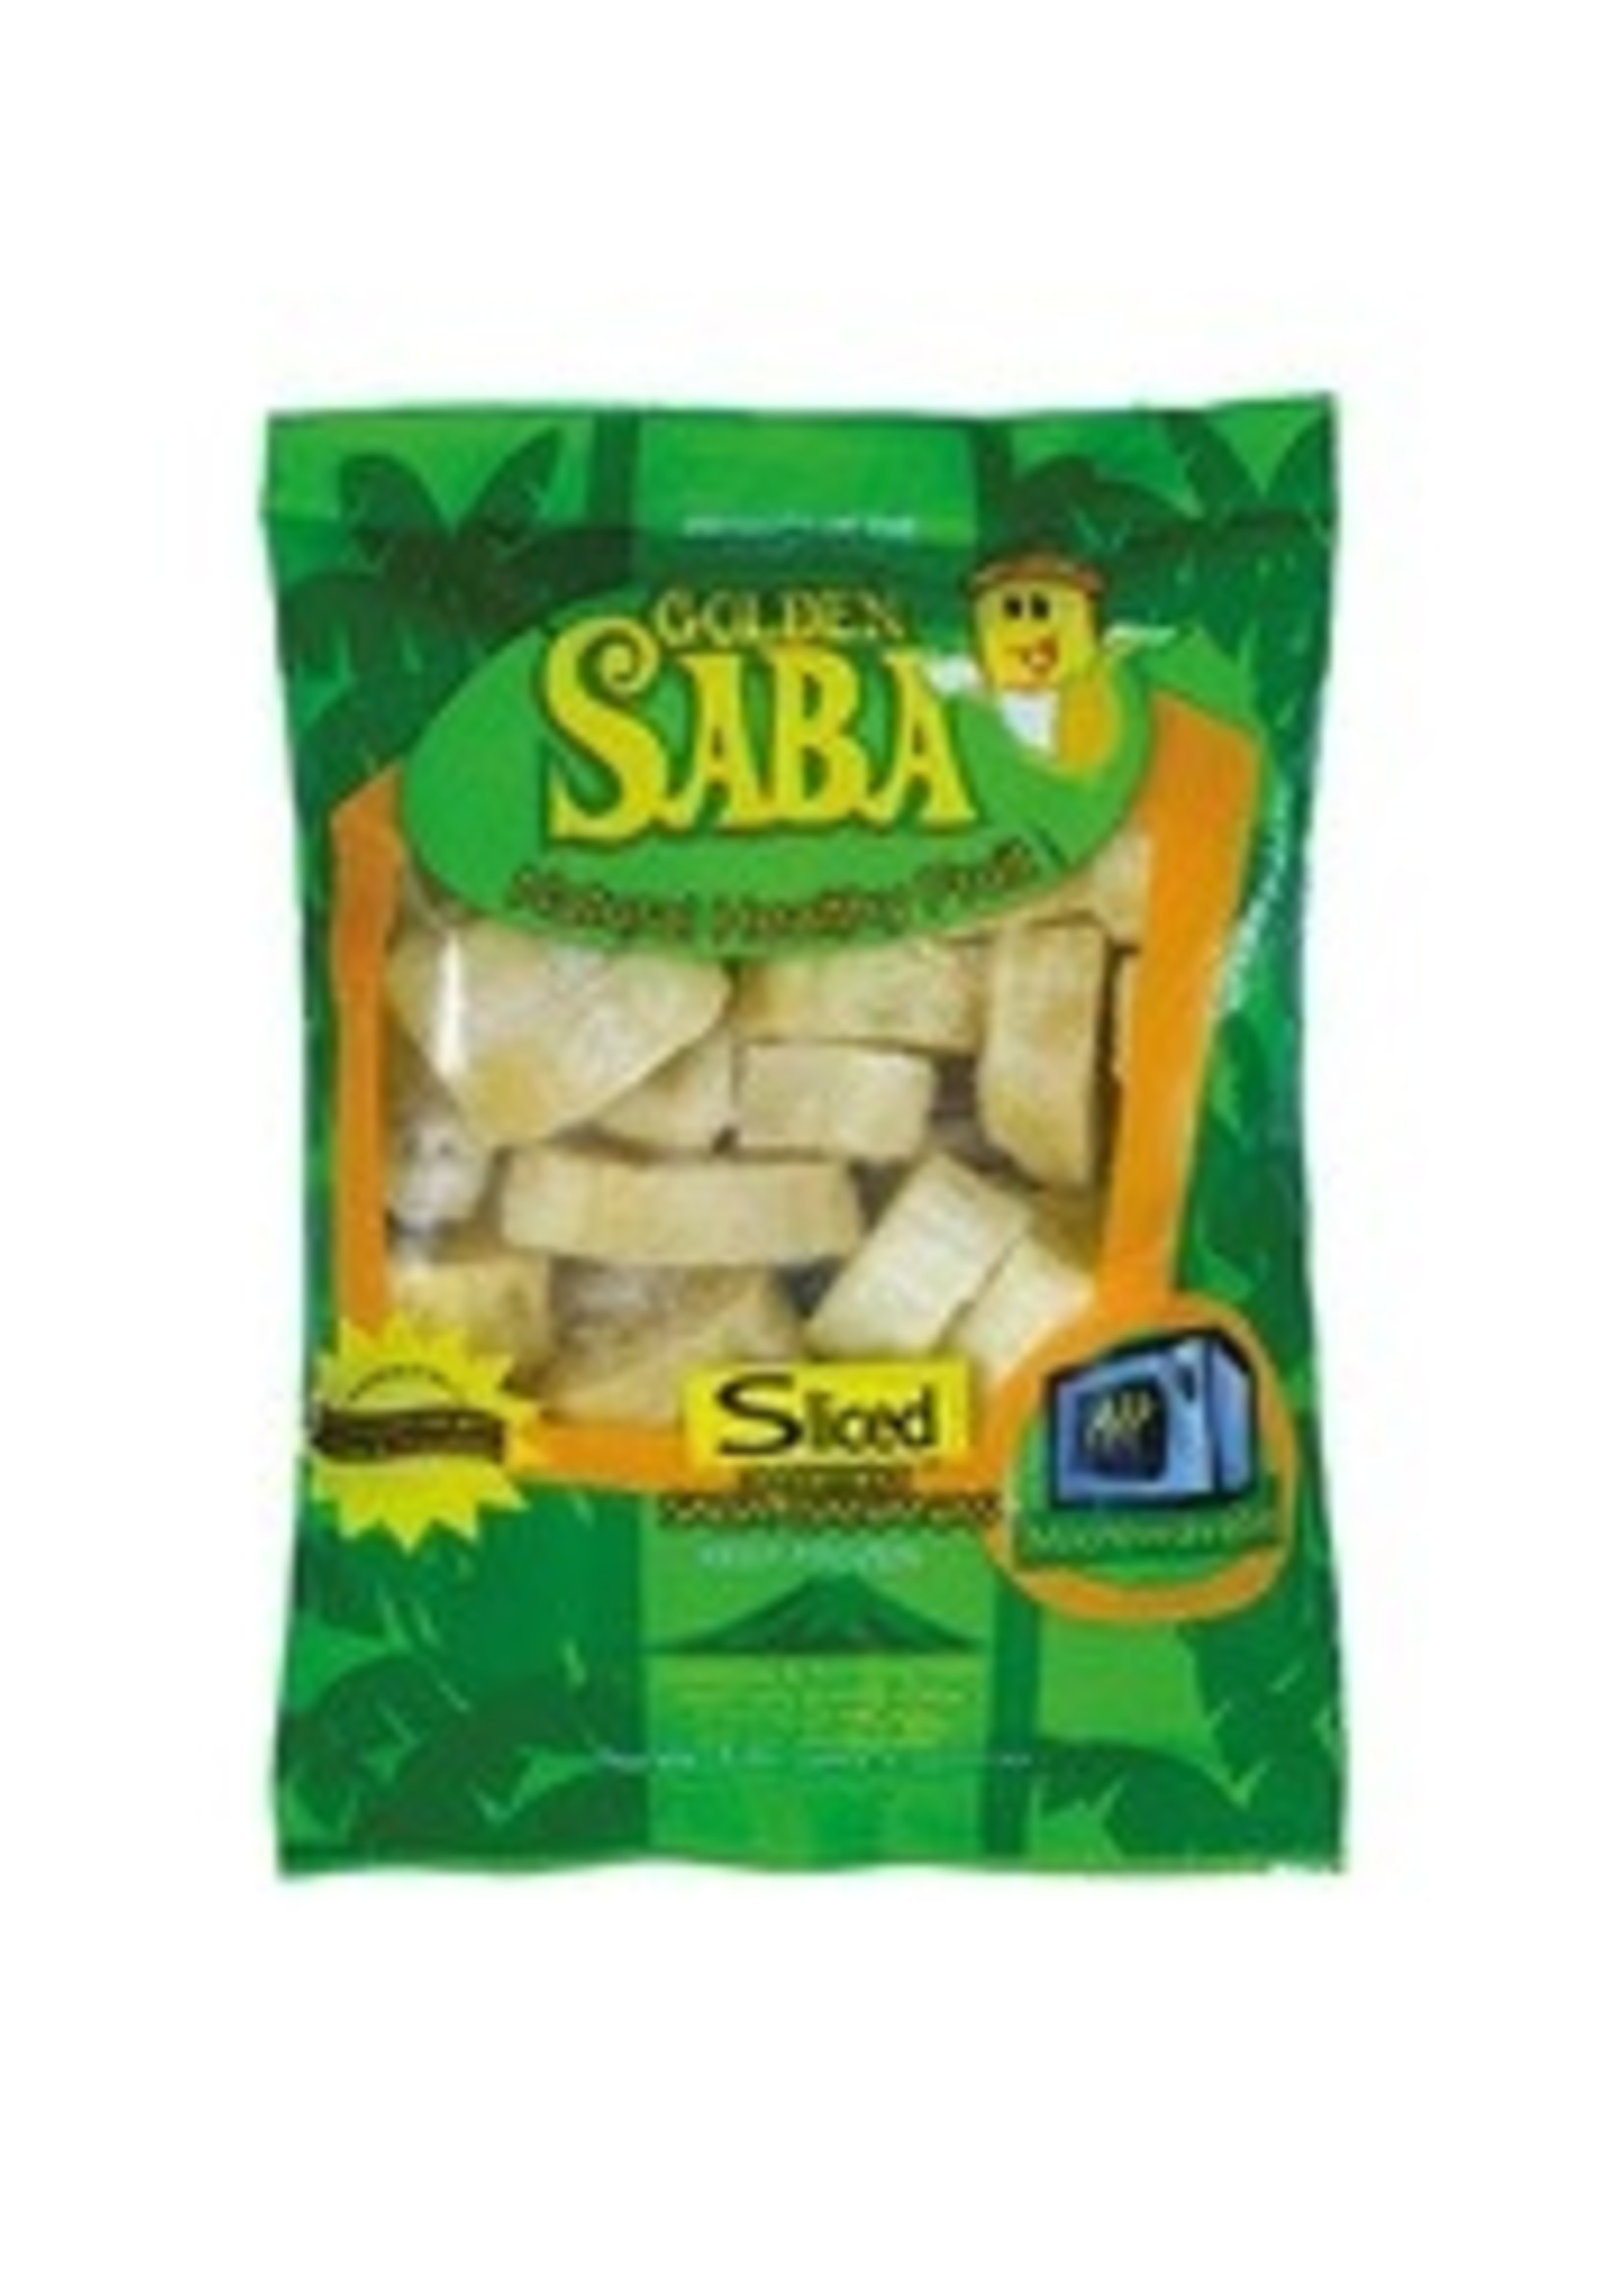 Golden Saba Golden Saba Steamed Saba Banana (Slices) 454g